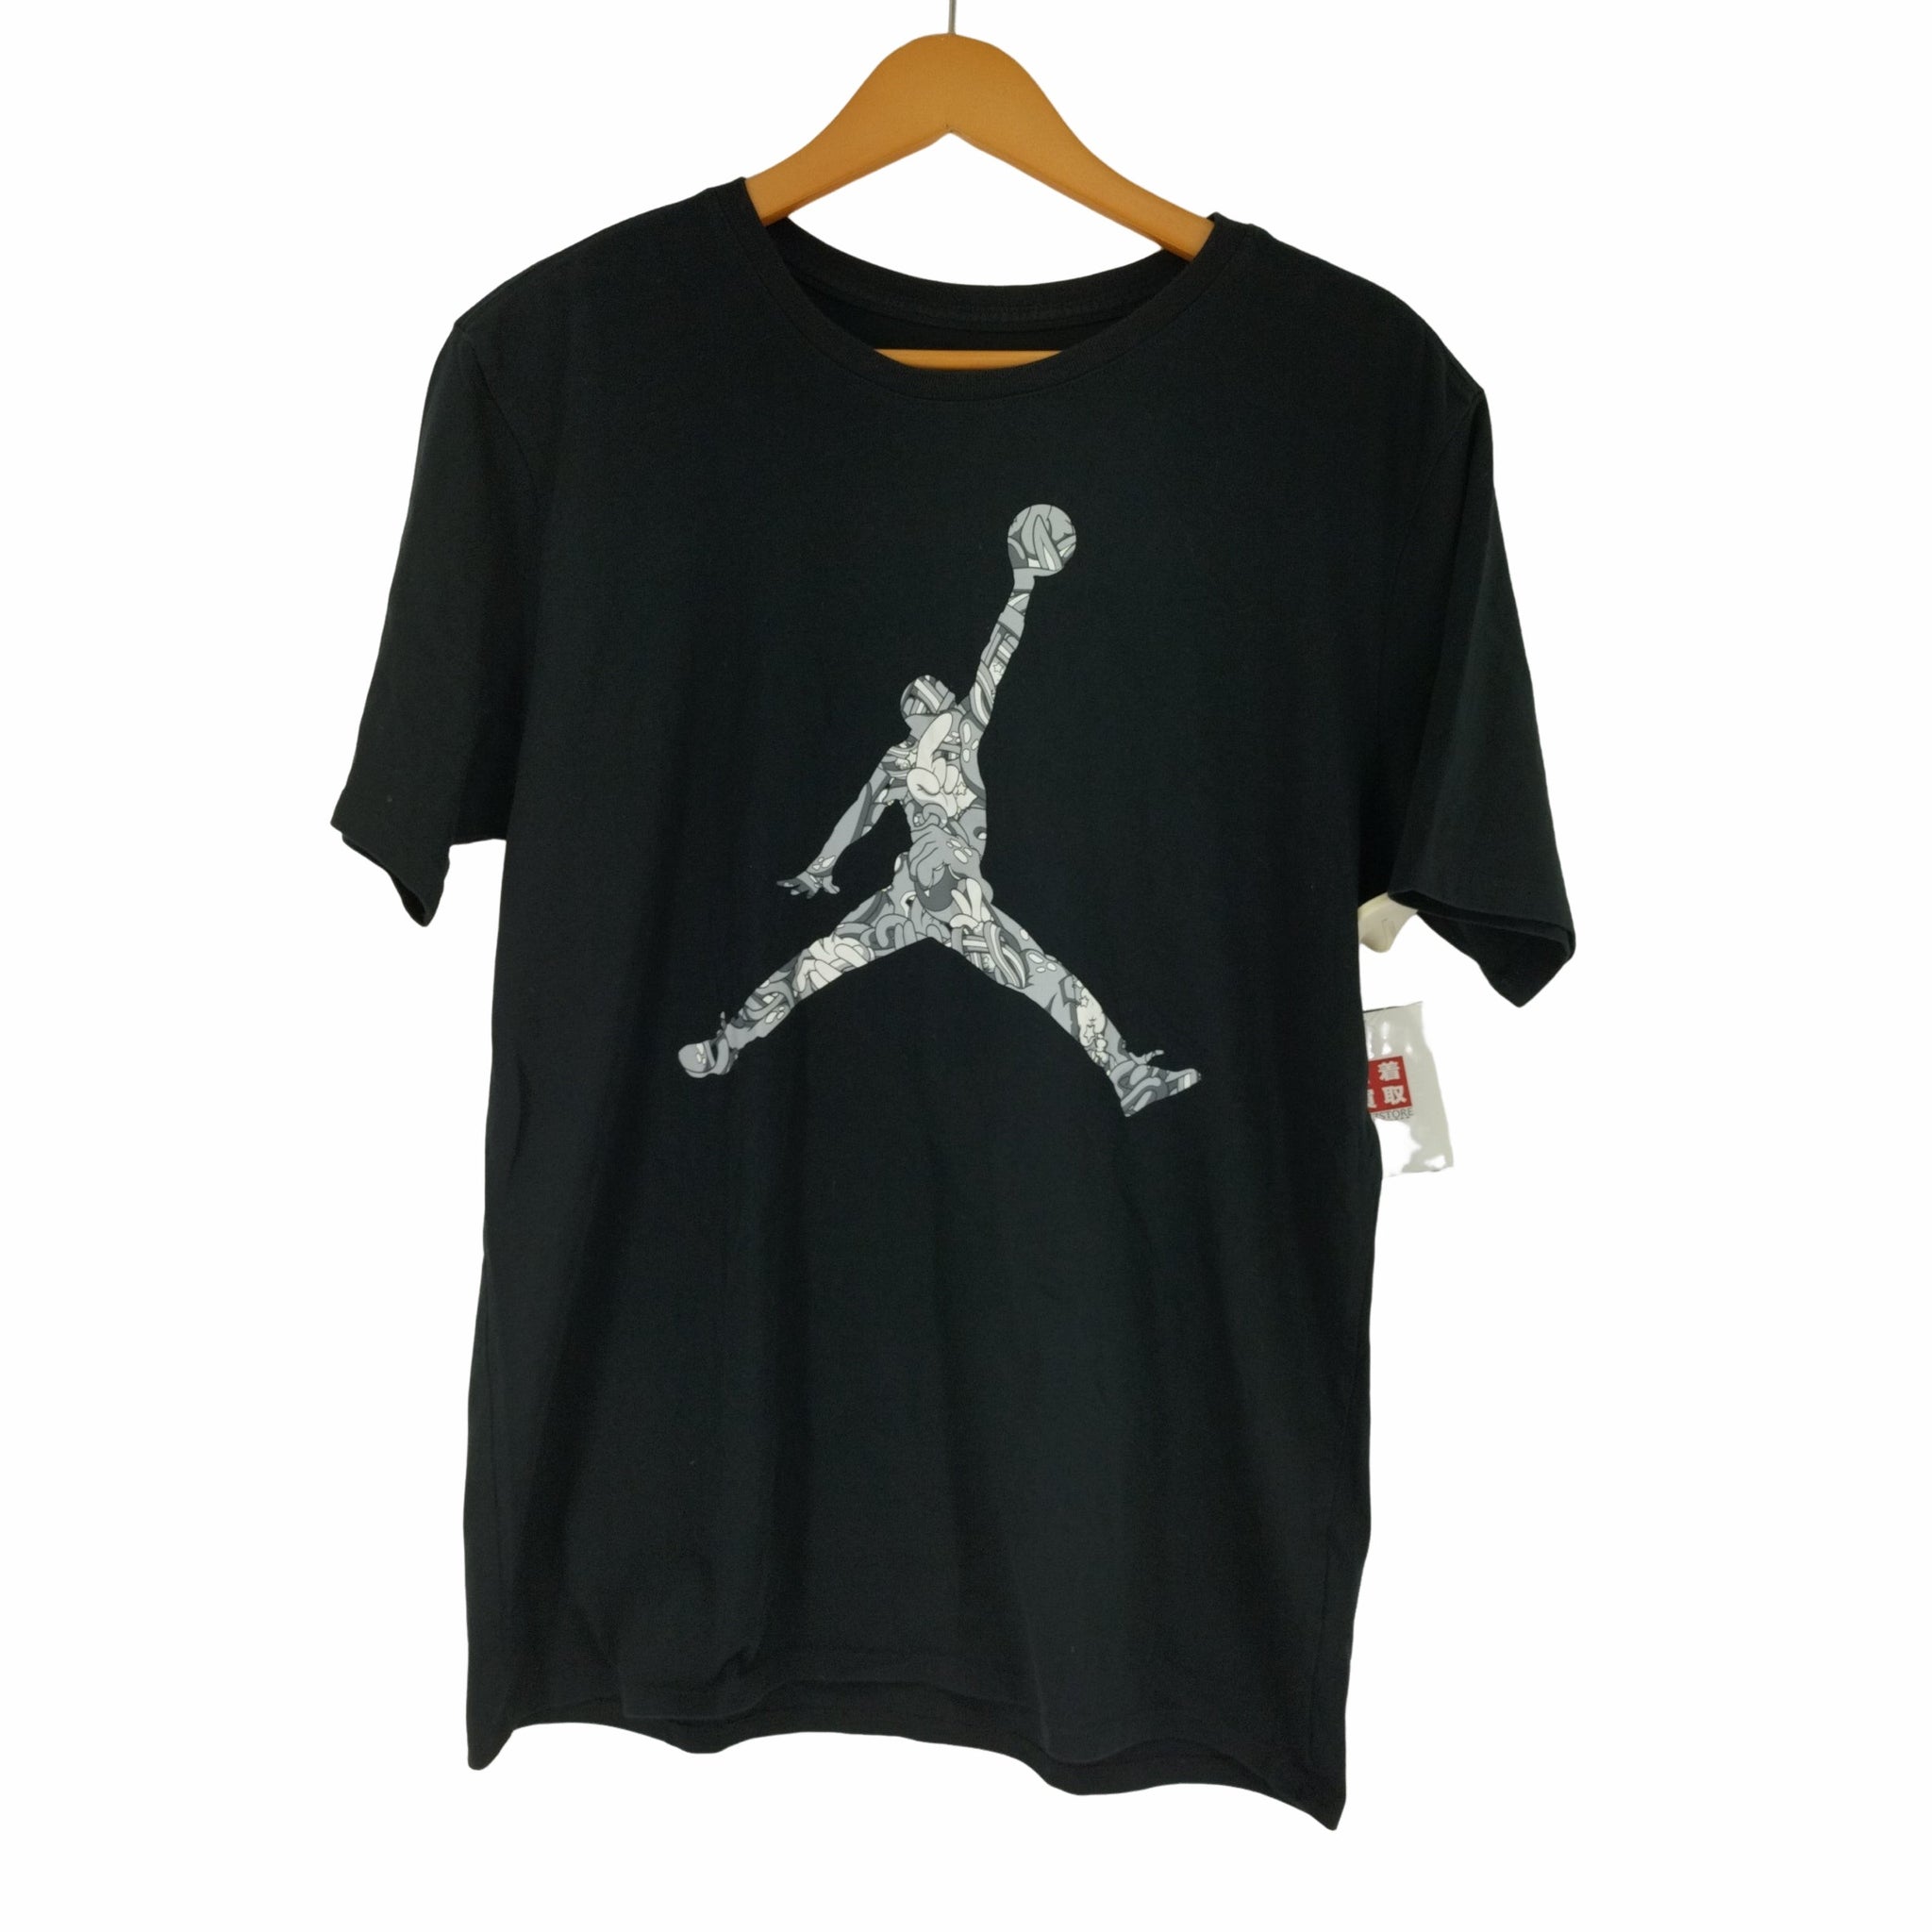 JORDAN BRAND(ジョーダンブランド)ジャンプマンロゴ S/S Tシャツ